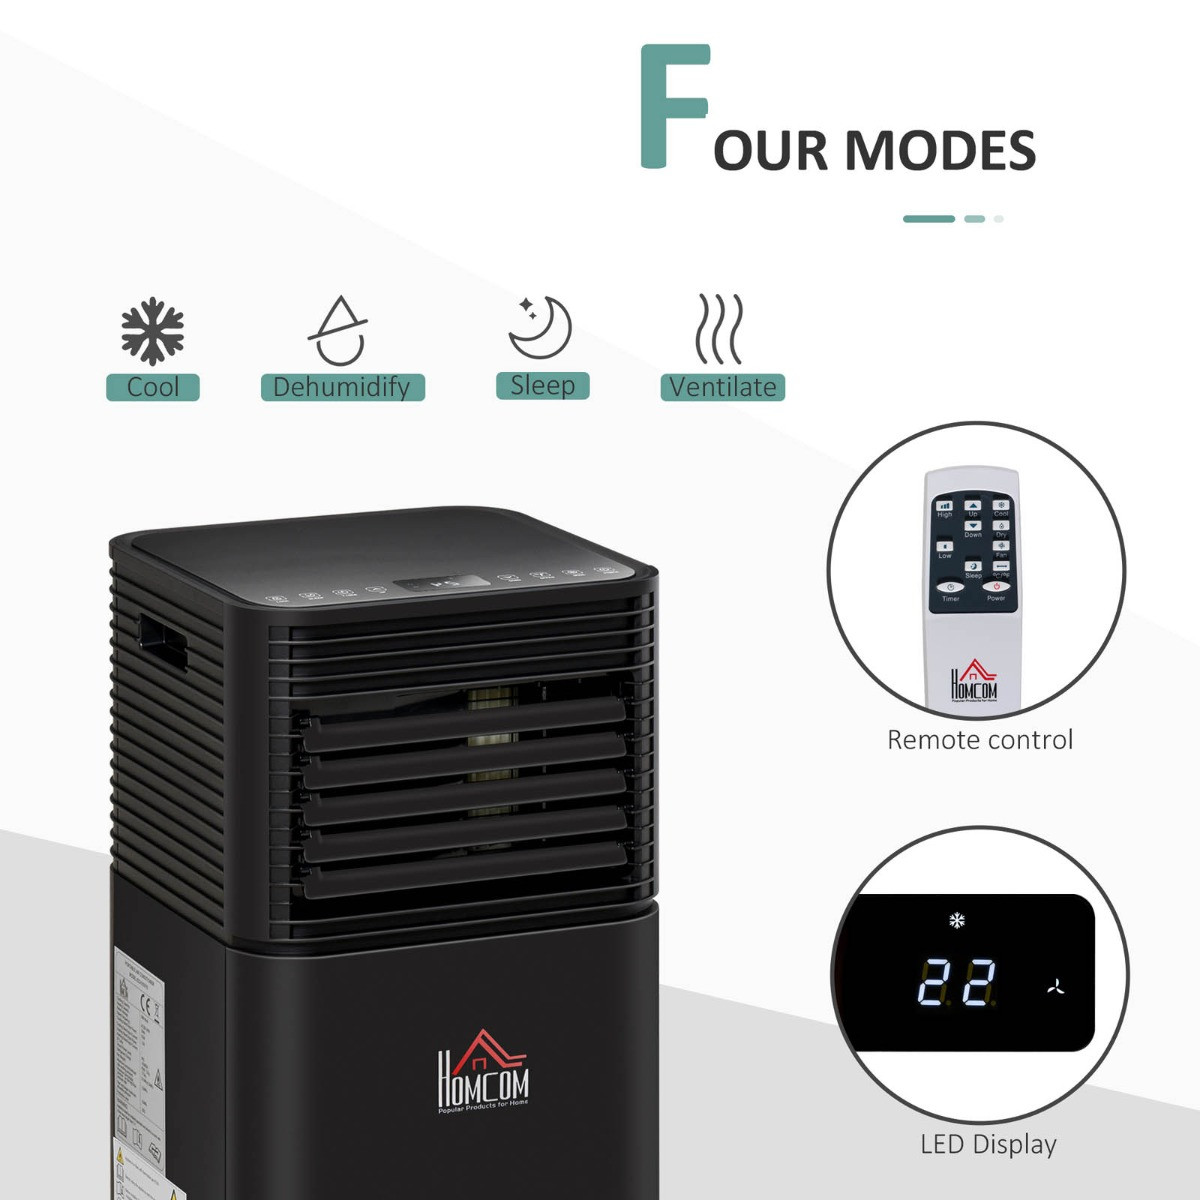 Homcom 4-in-1 Portable Air Conditioner Unit, Black - 7000 BTU>